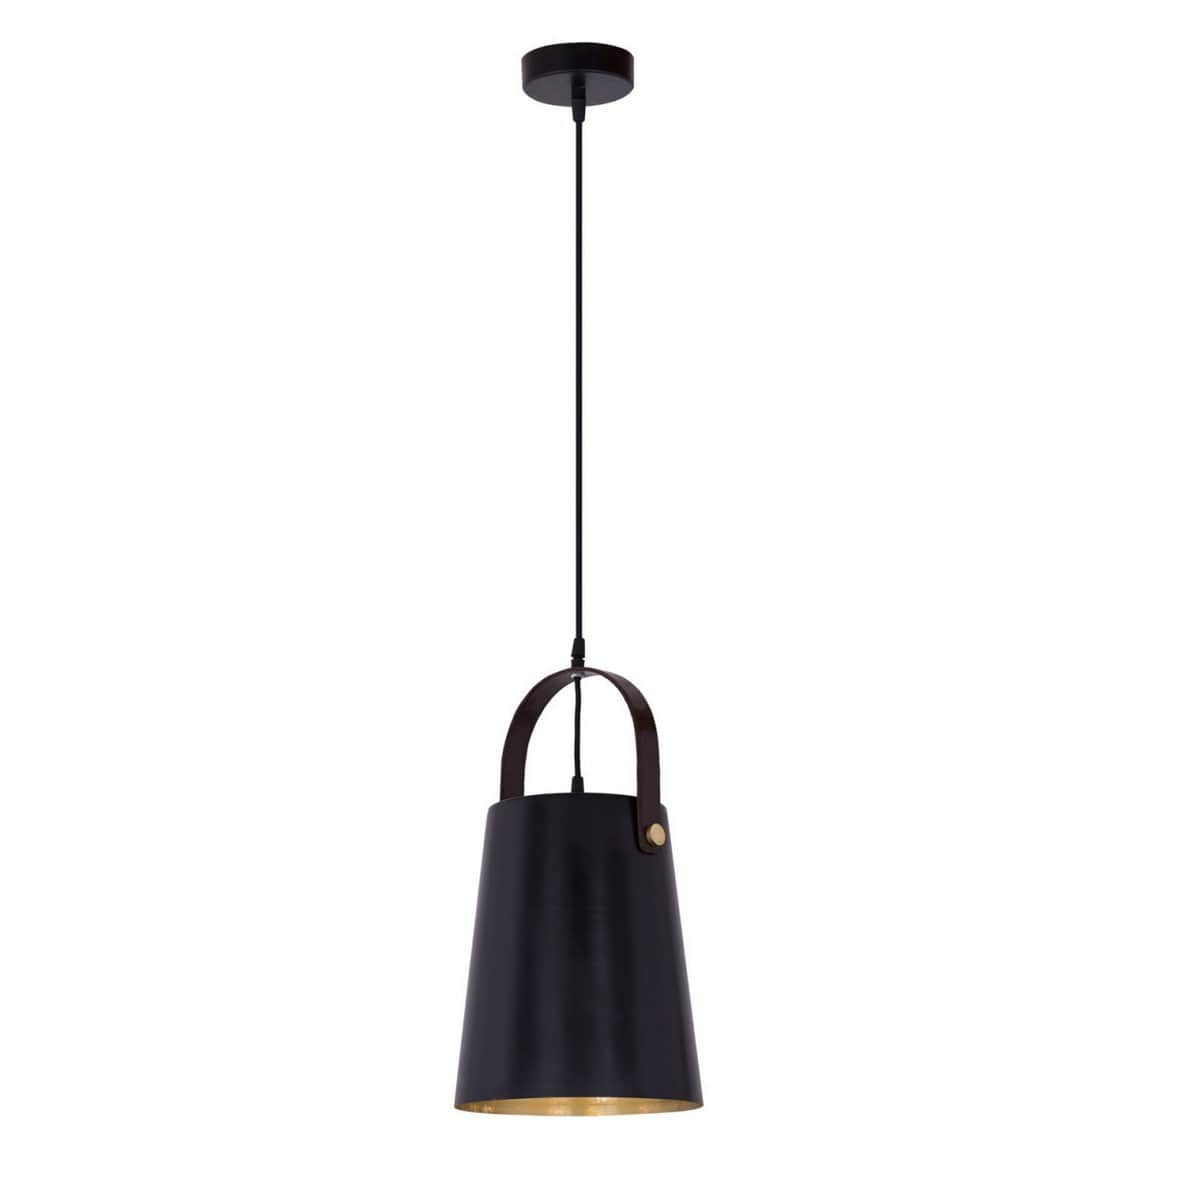 Voglrieder kreatives Wohnen Hanglamp metaal met leren beugel hanglamp eettafel plafondlamp vintage stijl